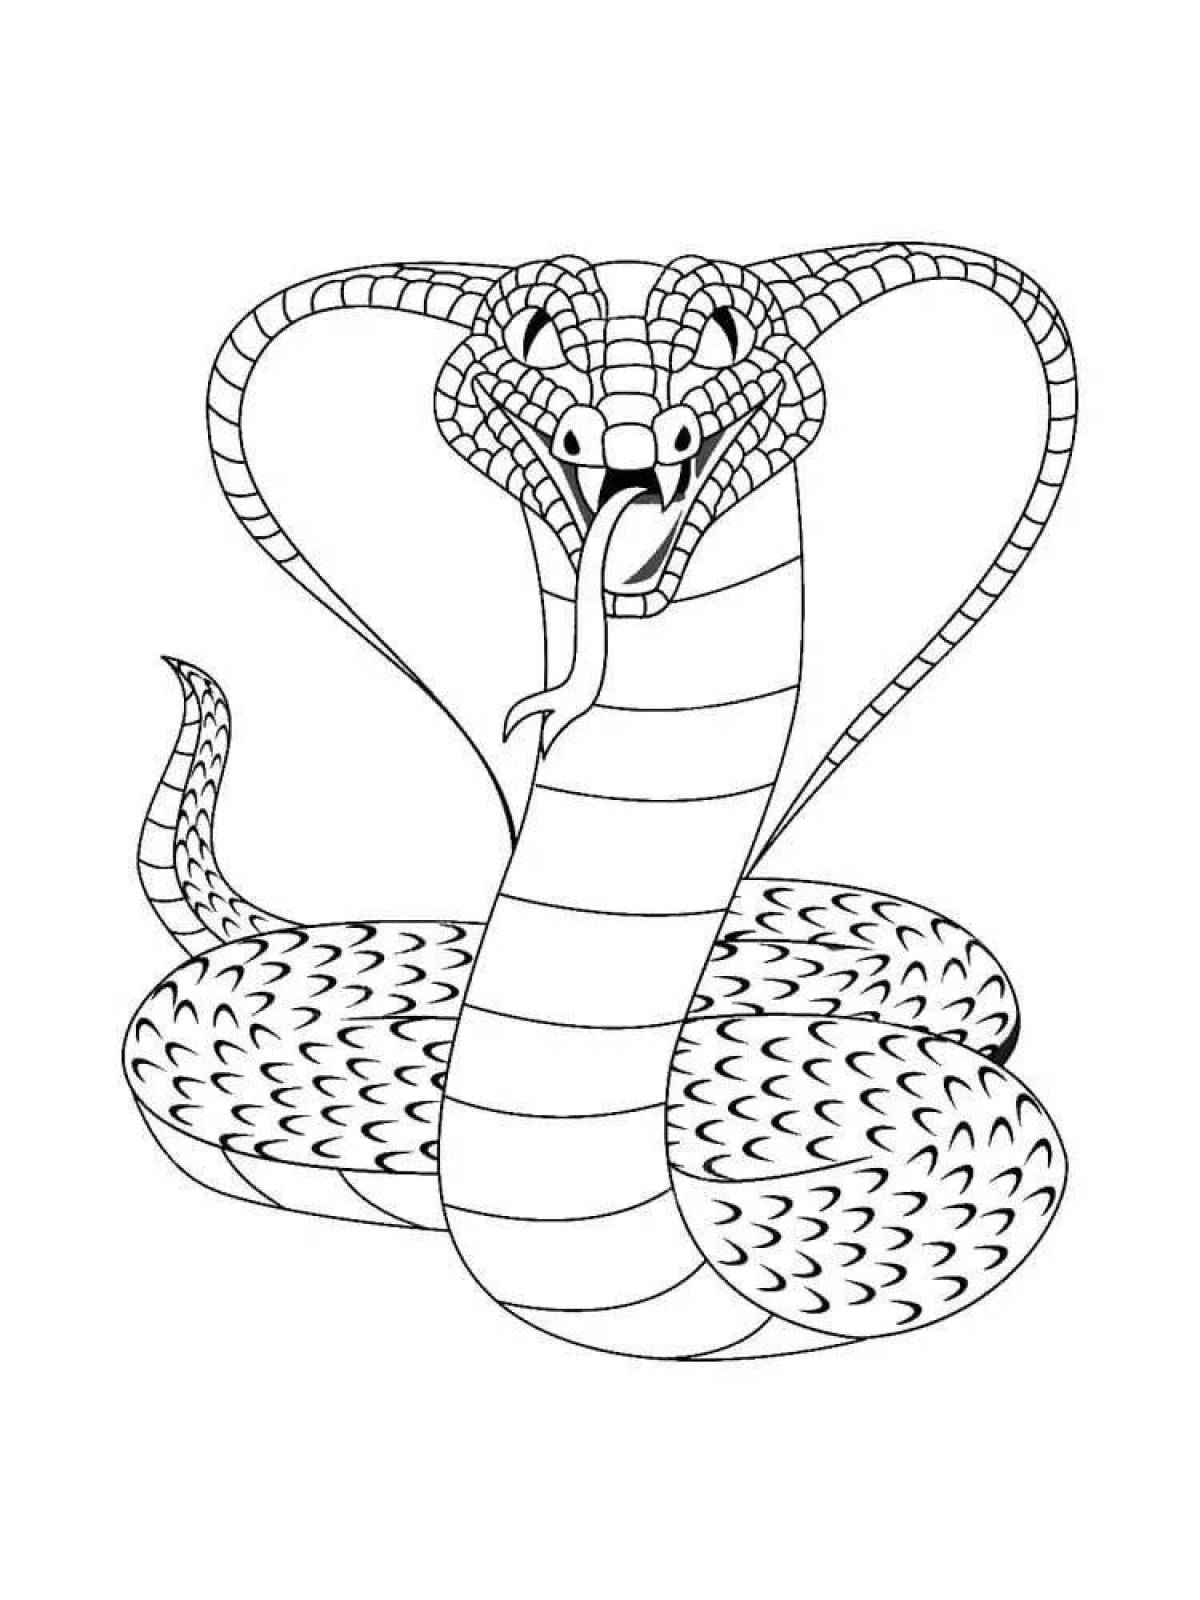 Generous king cobra coloring book